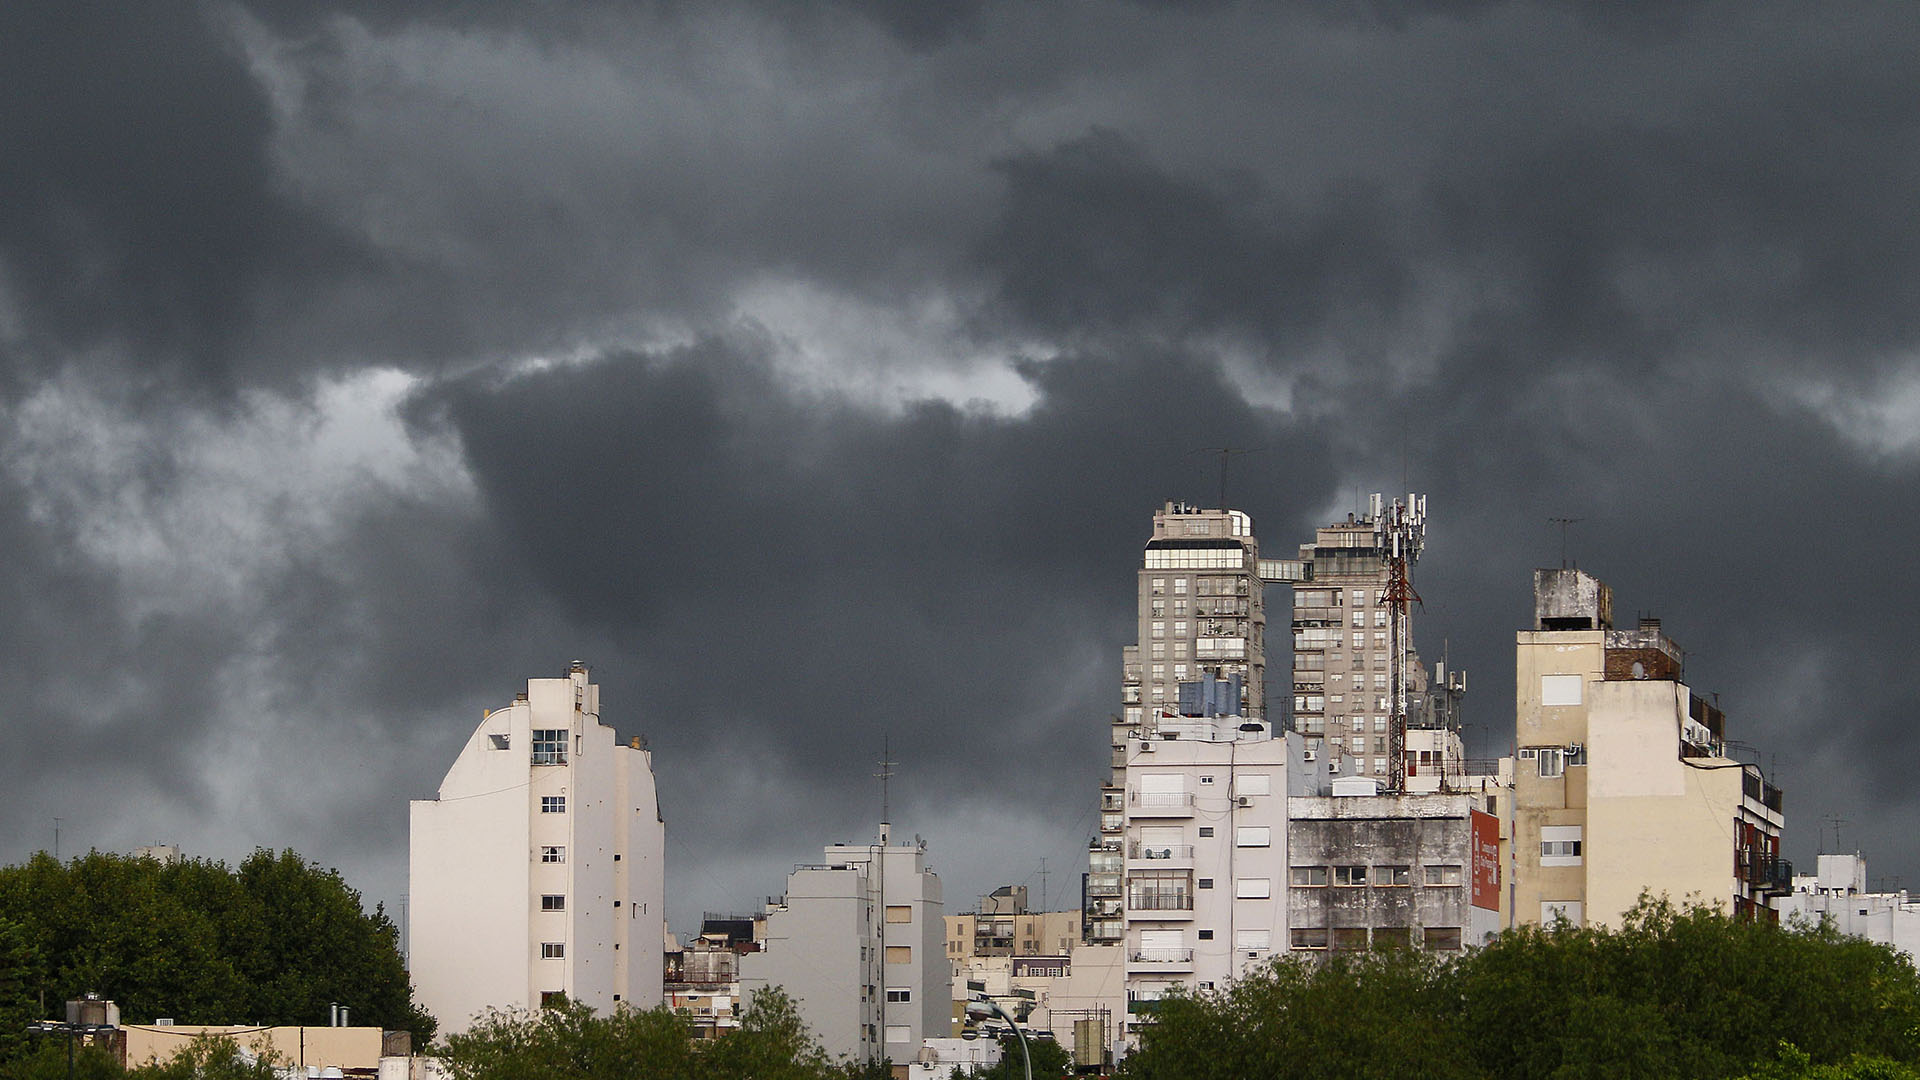 El ciclón subtropical que afectó a Uruguay llegó a la Costa bonaerense: pronostican vientos fuertes y hay alerta amarilla